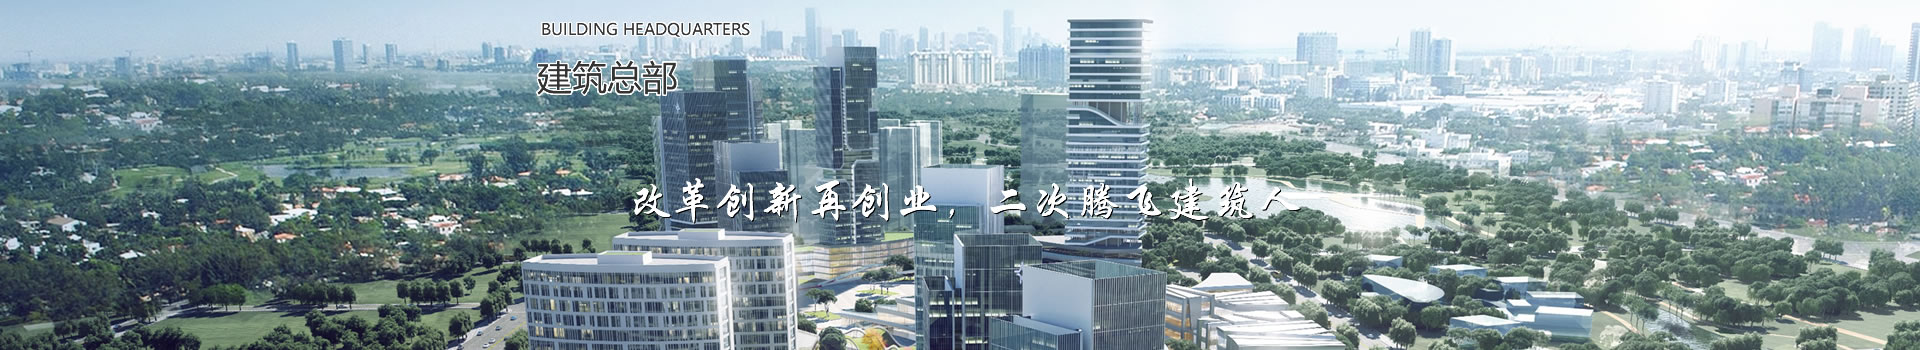 改革创新再创业，二次腾飞建筑人 - 建筑总部 - 中国·泸县建筑